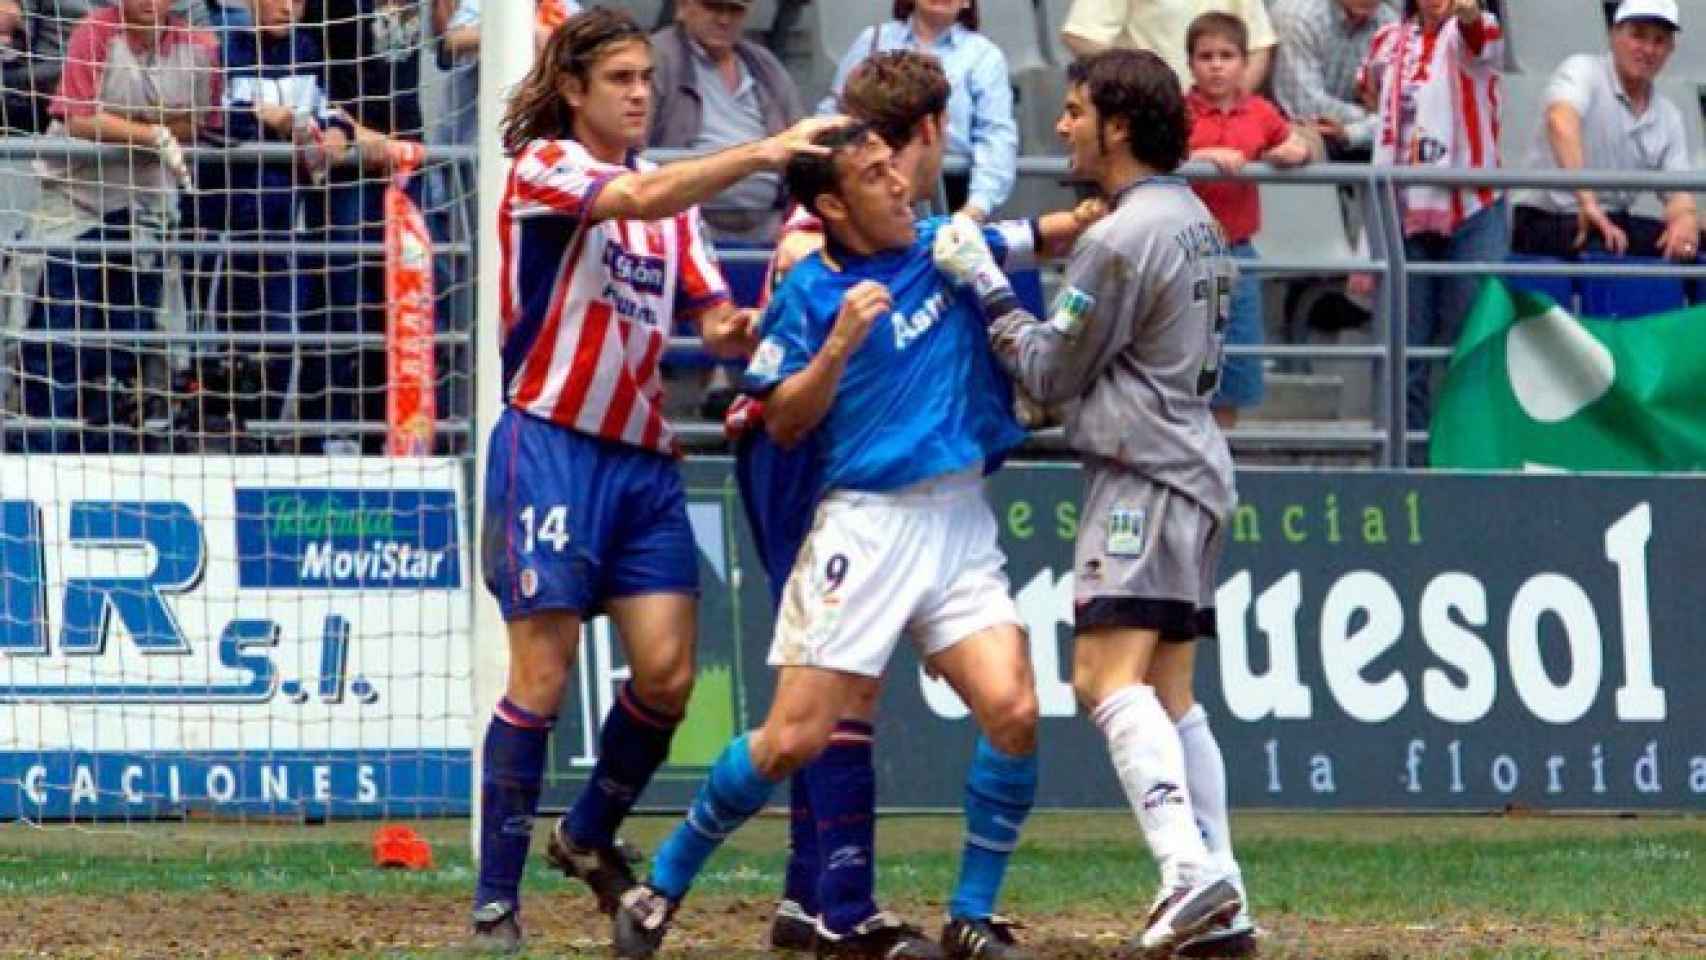 Real Oviedo - Sporting, una rivalidad de muchos años. Aquí, el último enfrentamiento entre ambos en el Tartiere (2003)